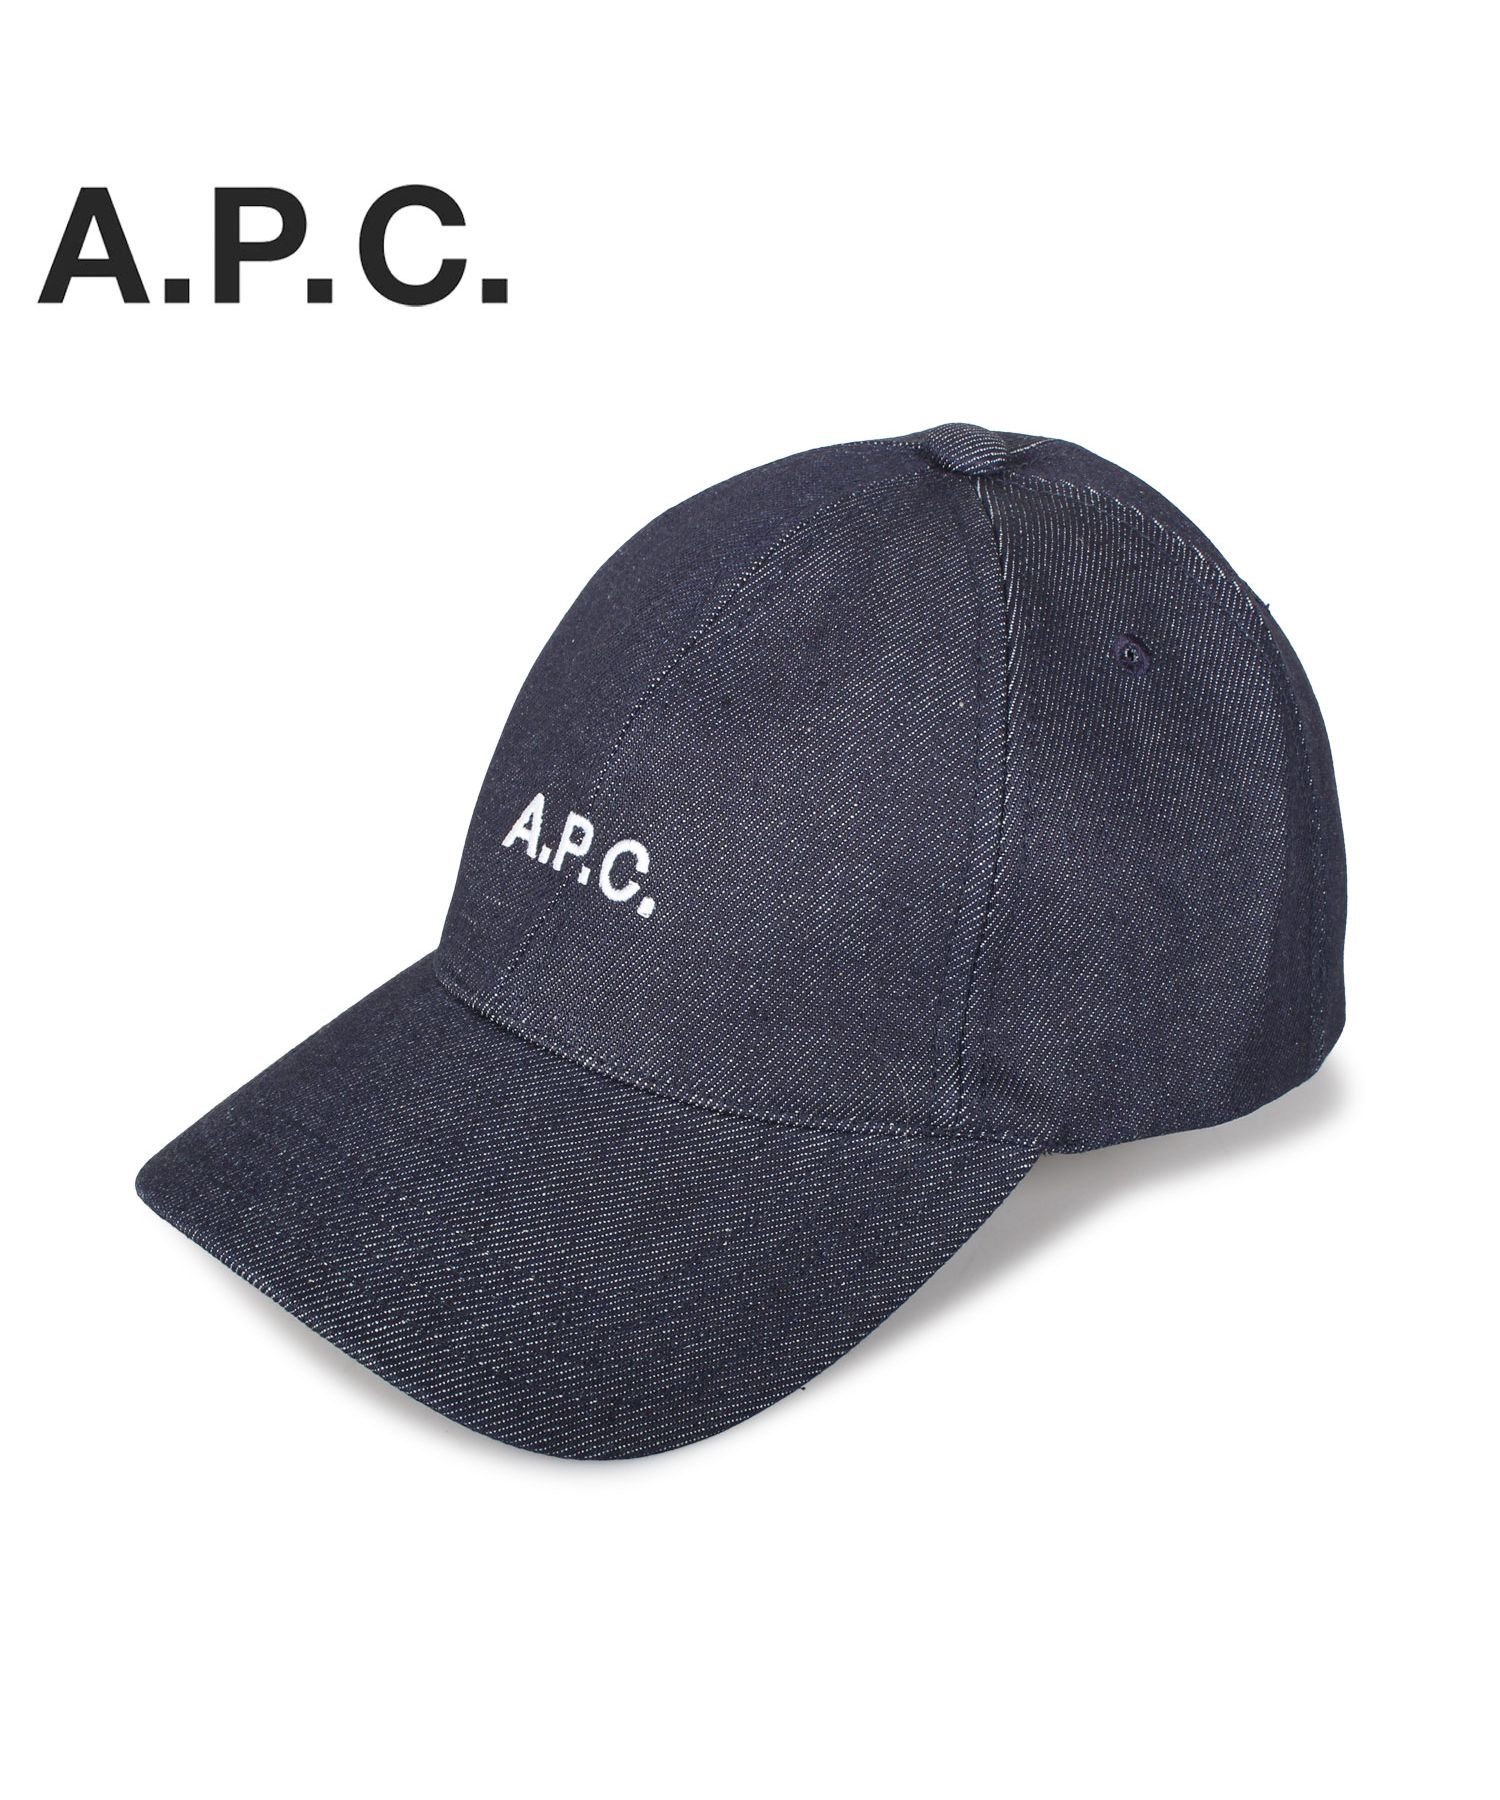 A.P.C. アーペーセー キャップ 帽子 メンズ レディース ブランド